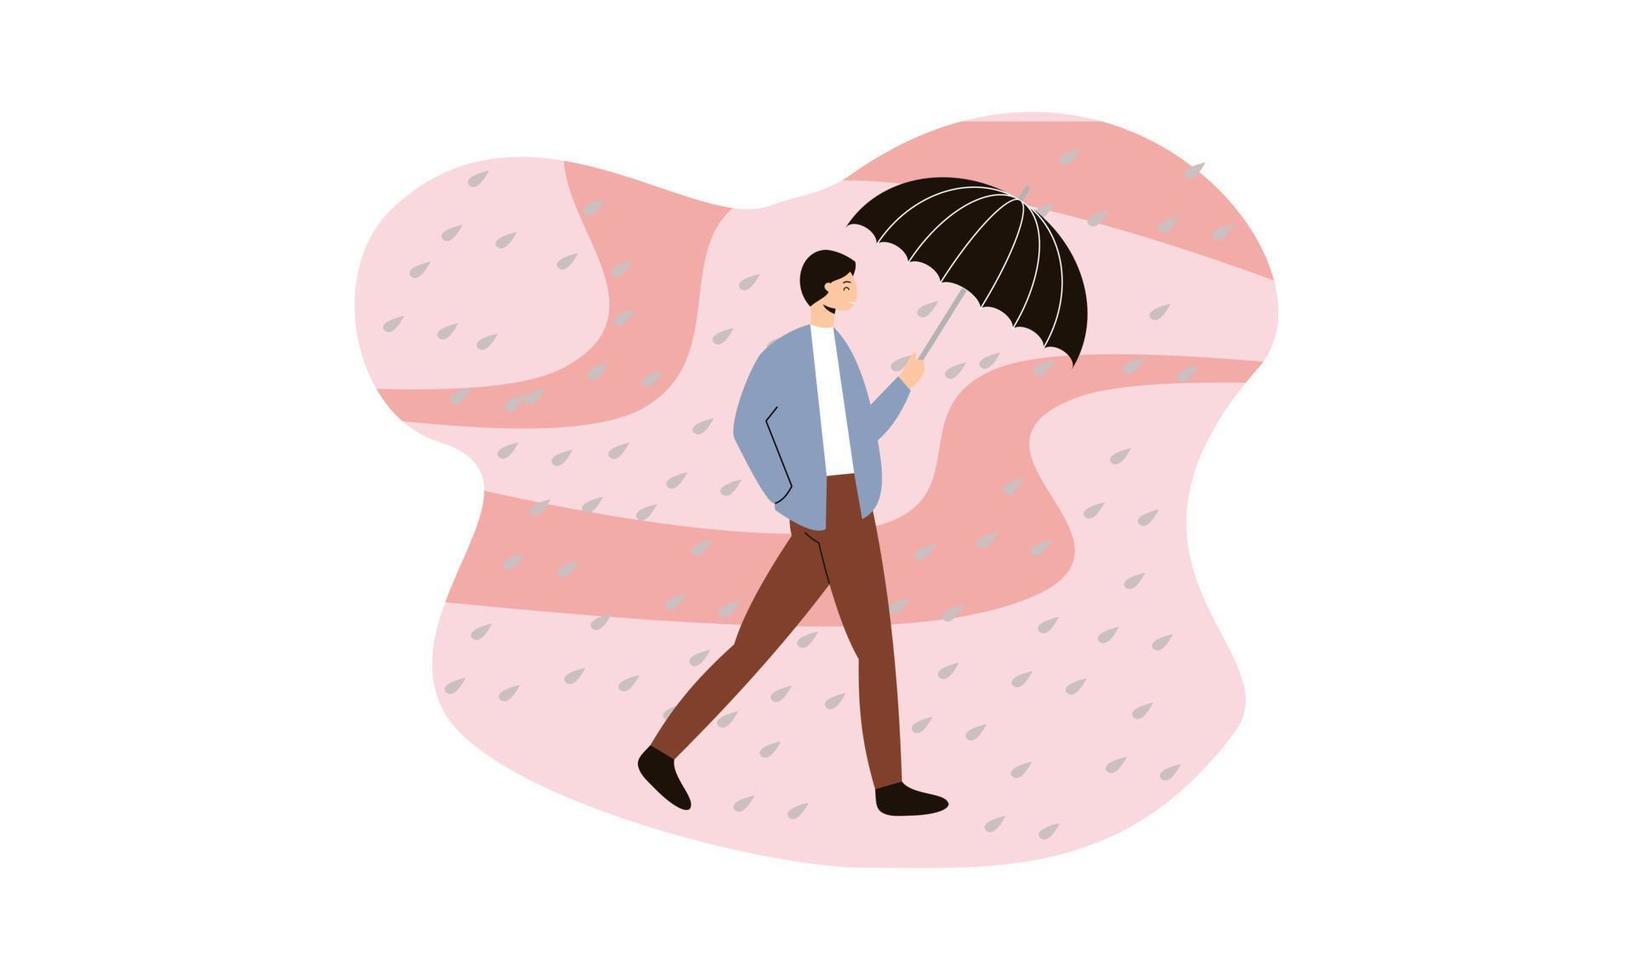 mensen lopen met paraplu's weer met regenachtige landschappen illustratie vector